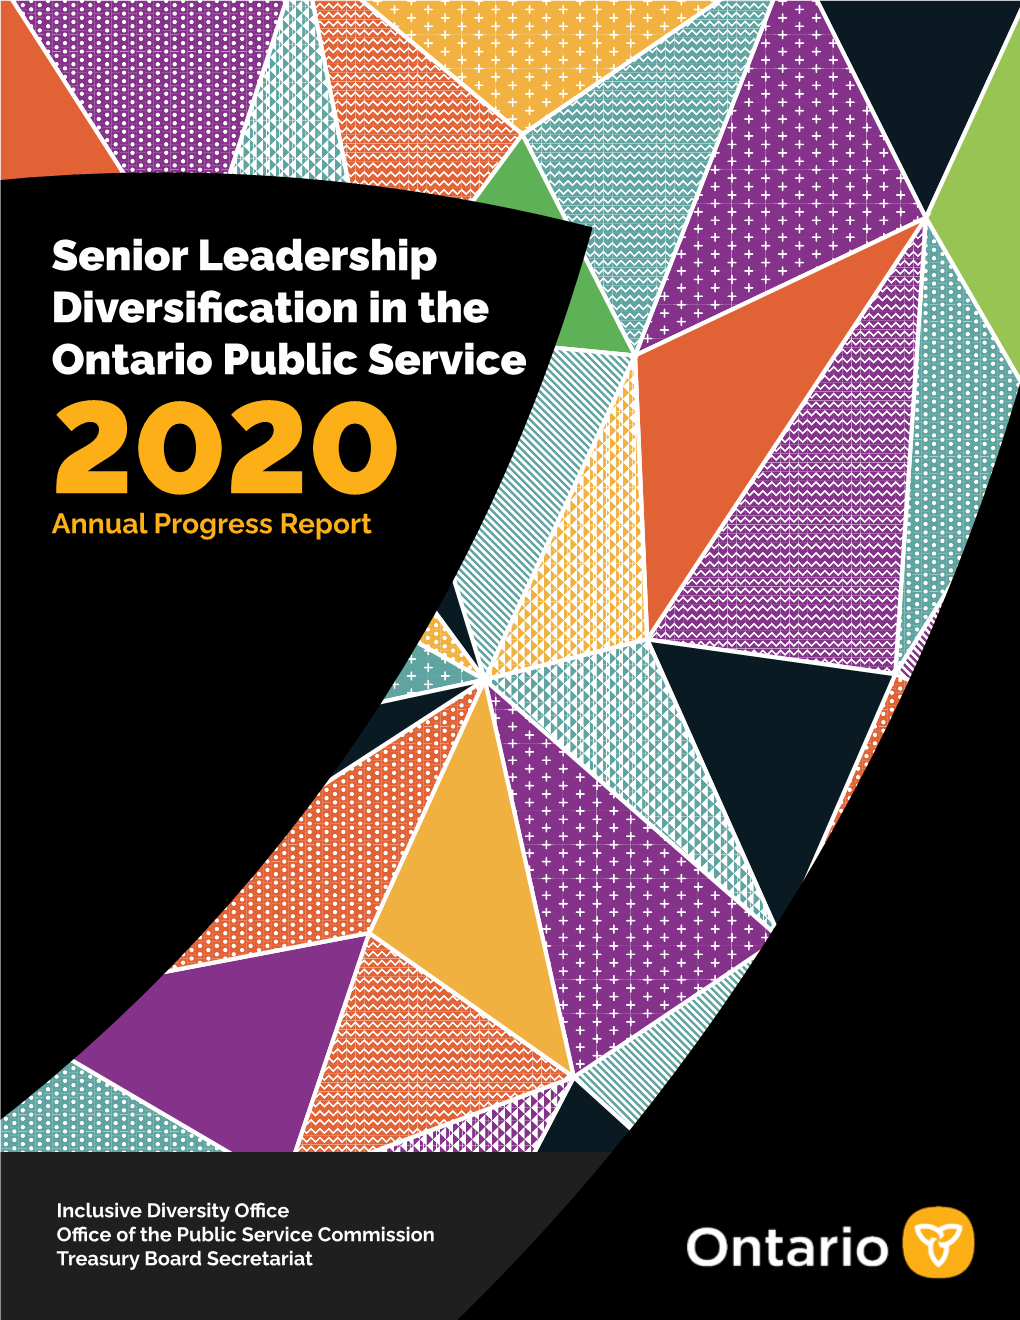 Senior Leadership Diversification in the Ontario Public